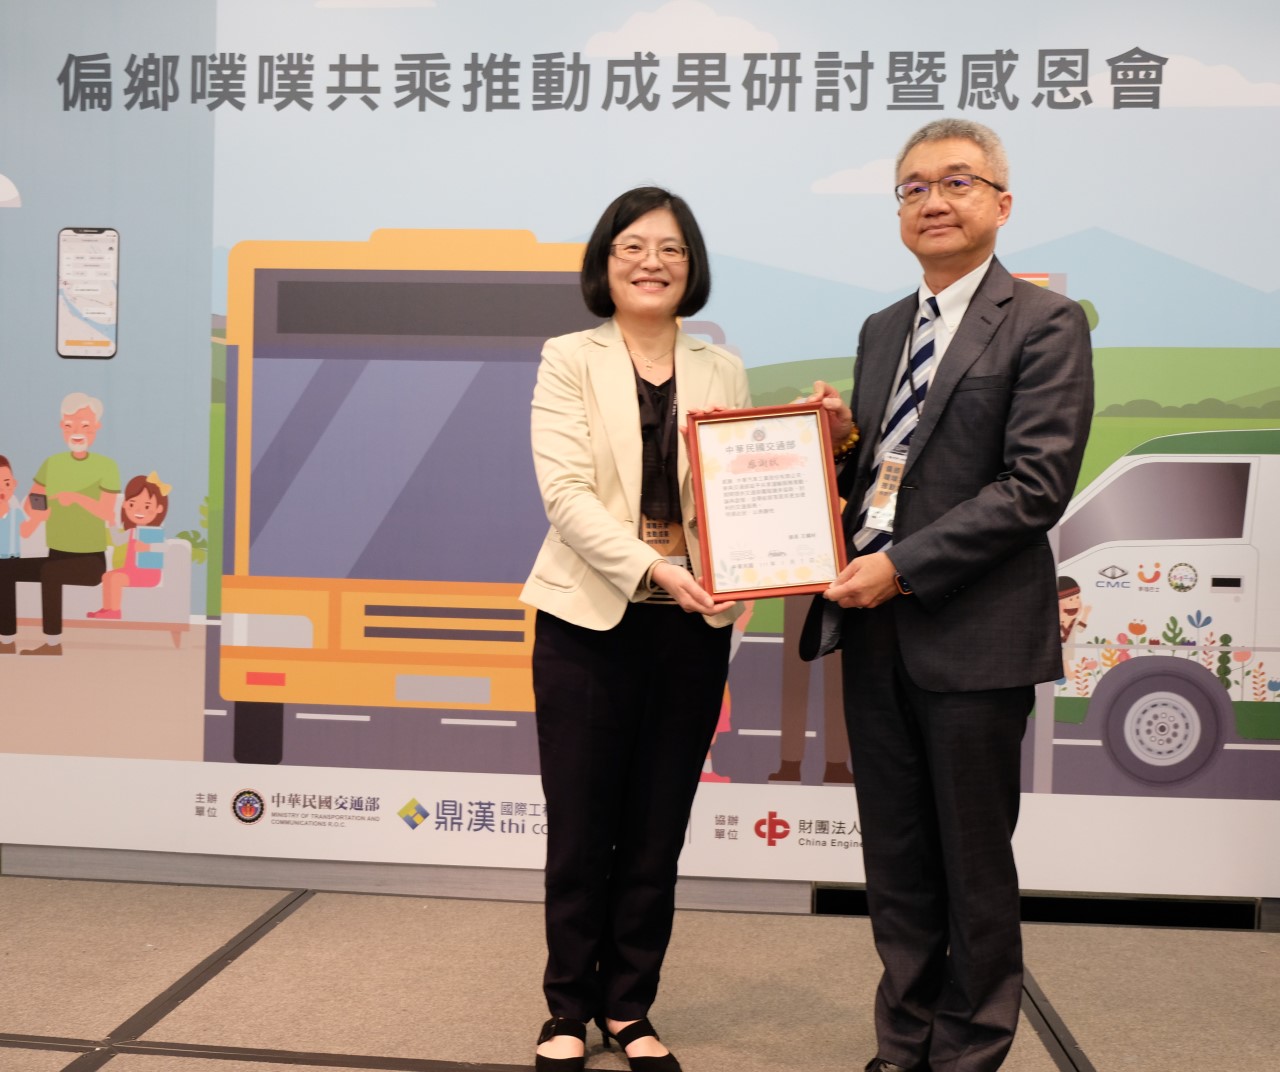 交通部黃荷婷主任秘書頒發特別貢獻獎感謝中華汽車對噗噗共乘的支持與協助，總經理陳昭文代表接受。